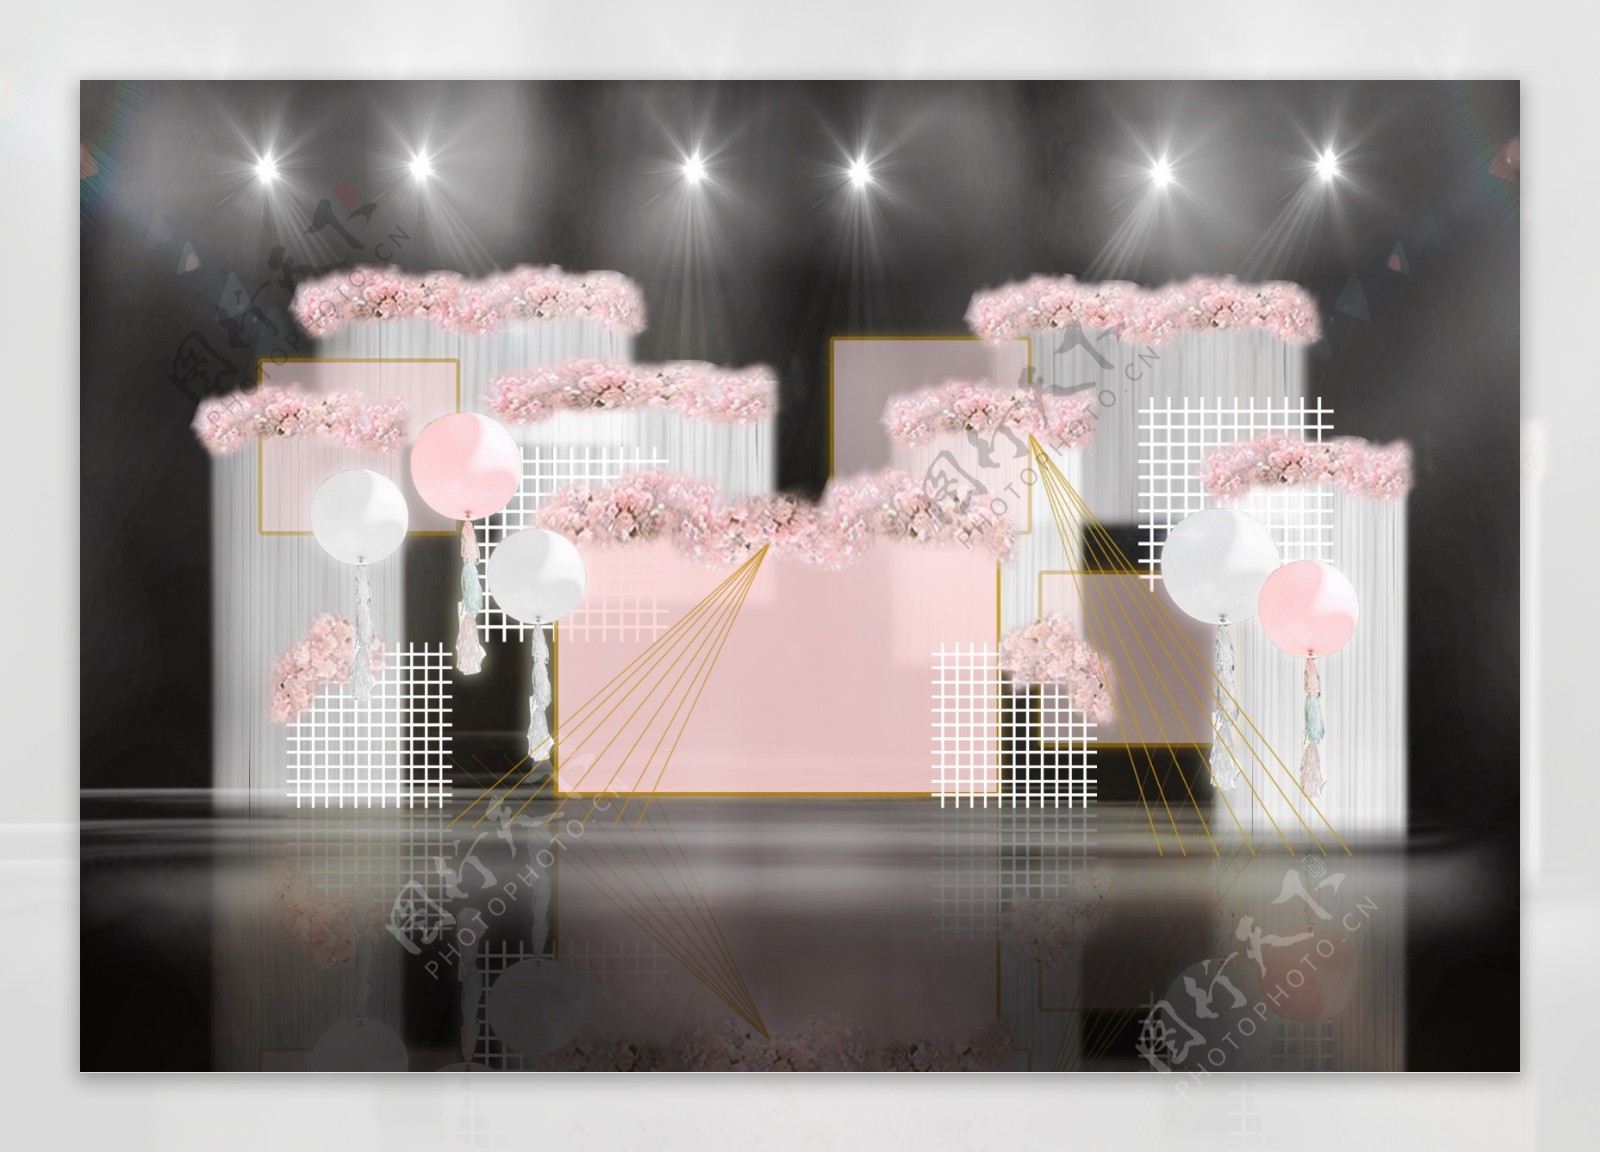 粉色柔和几何气球纱幔帷幕网格婚礼效果图